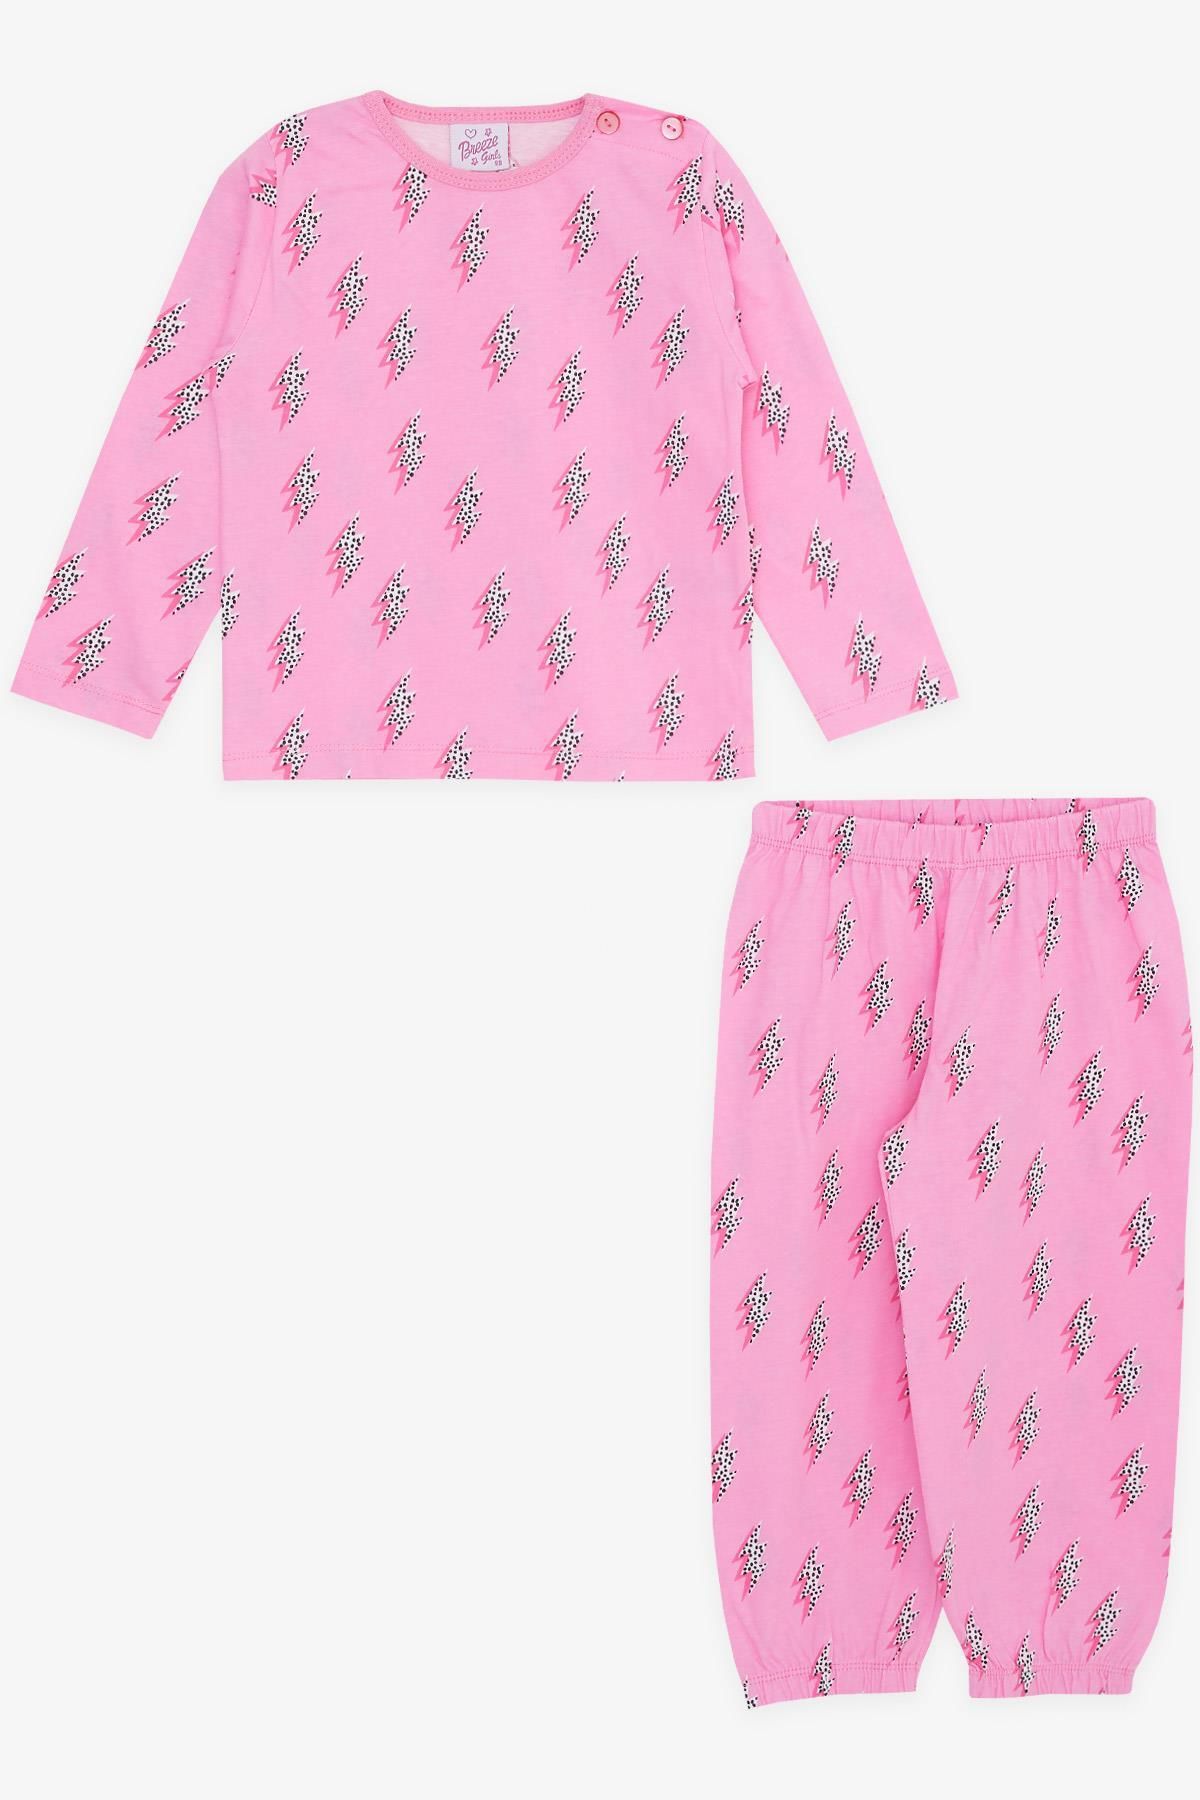 Breeze Kız Bebek Pijama Takımı Şimşek Desenli 9 Ay-3 Yaş, Pembe